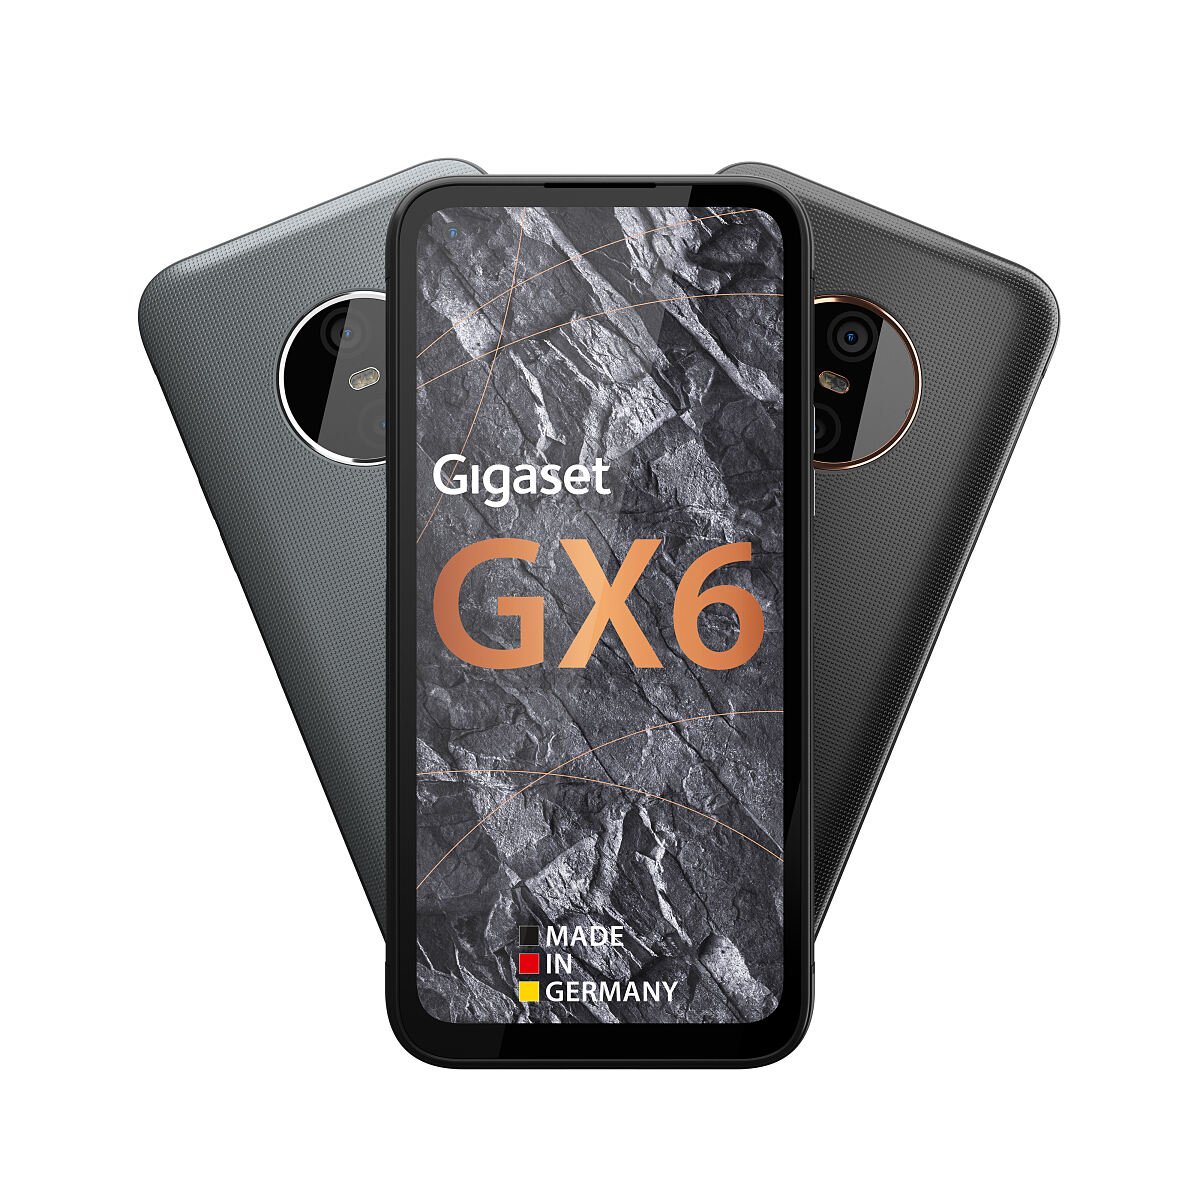 Das neue Gigaset GX6 PRO